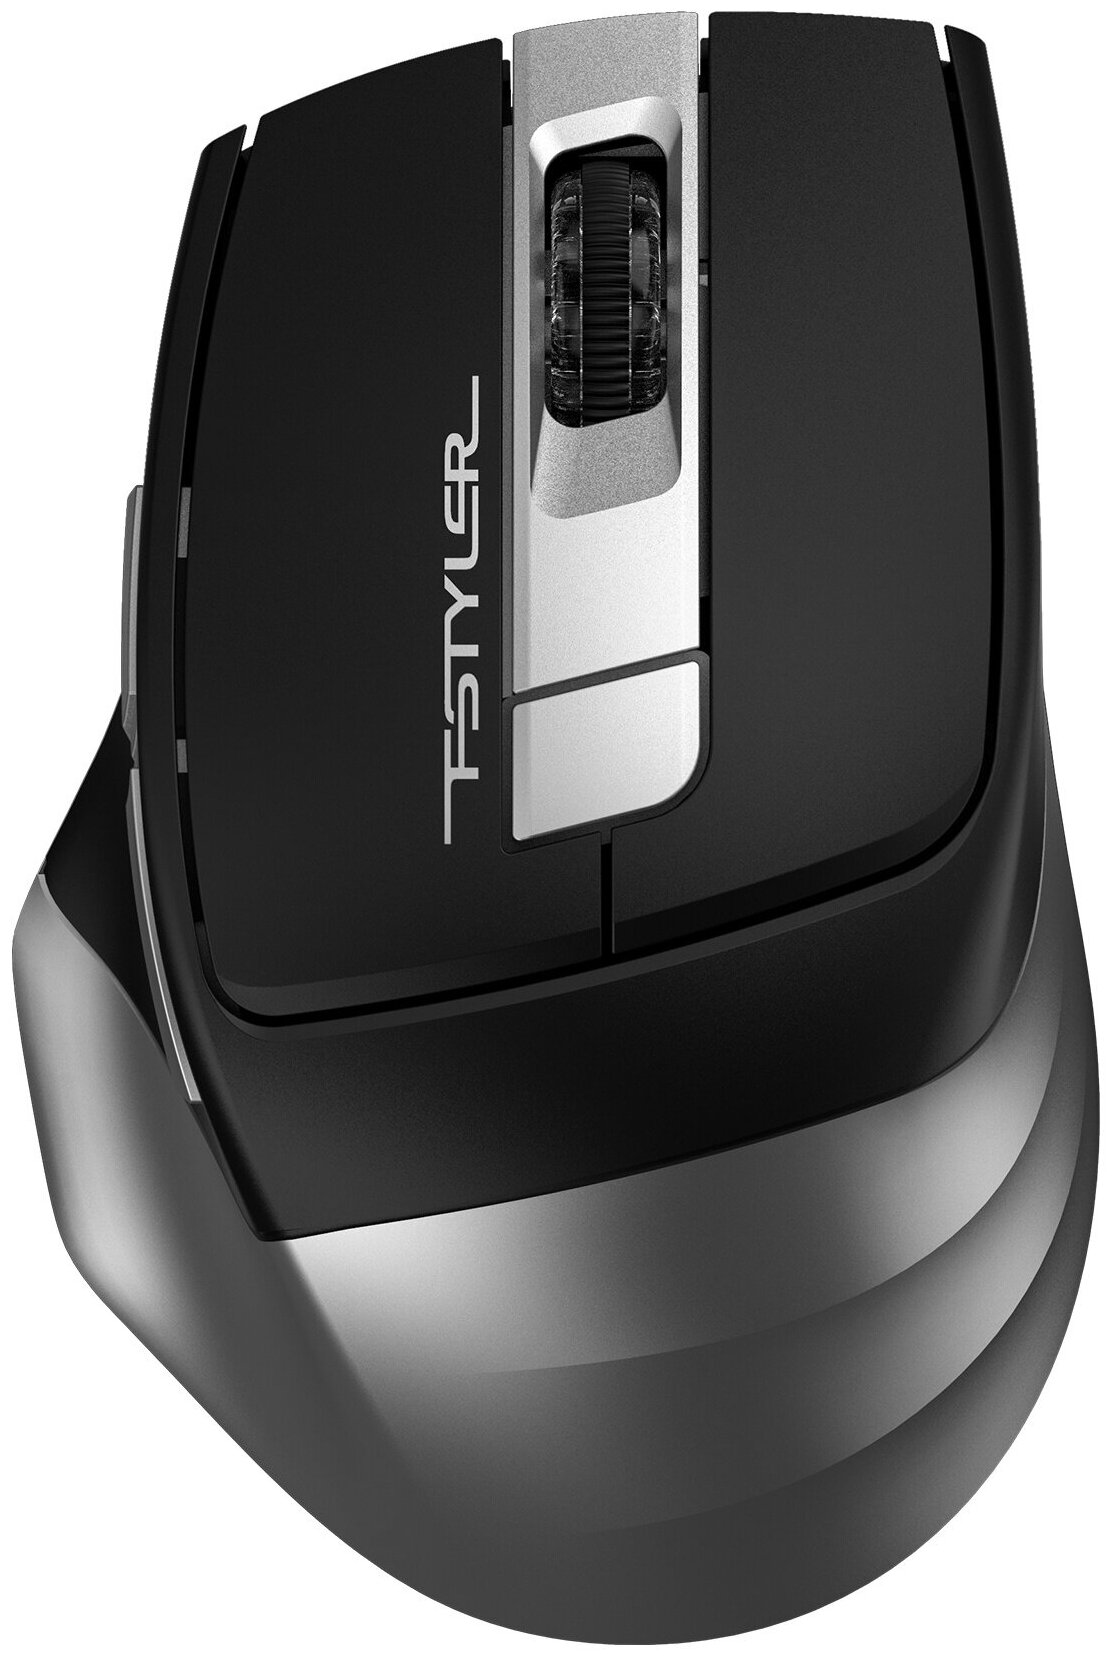 Мышь беспроводная A4Tech Fstyler FB35 , серый , оптическая, 2000dpi, BT/Radio, USB, 6 кнопок